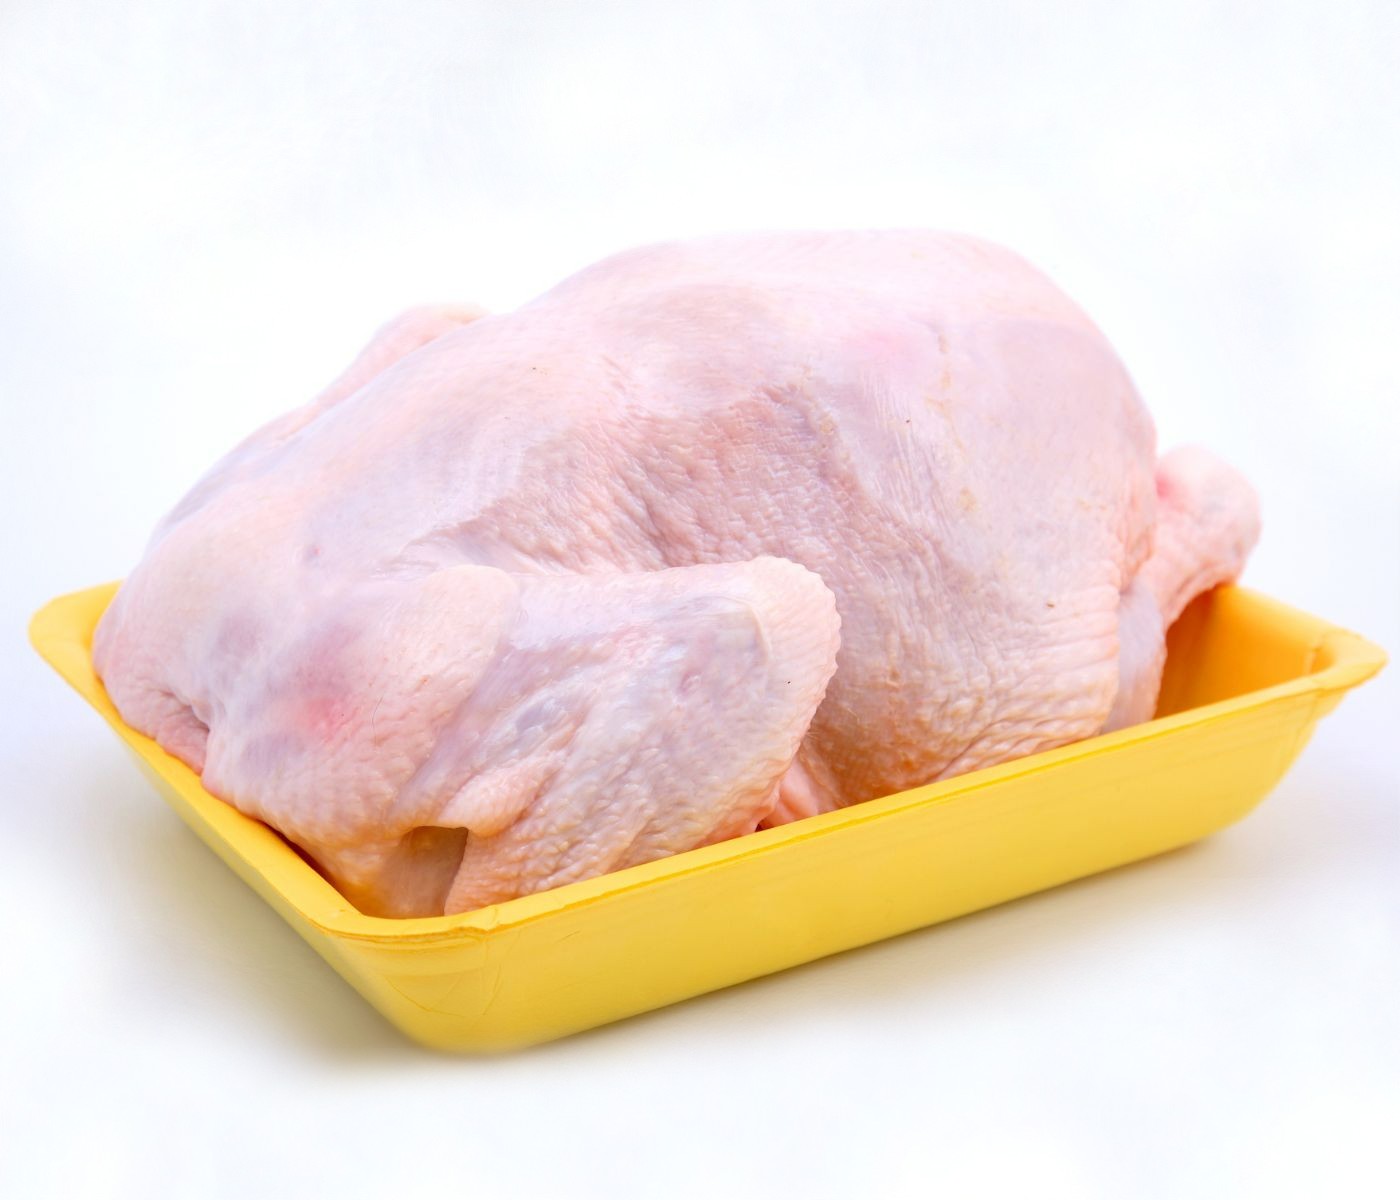 Industria avícola de Colombia: Apuesta por llevar el pollo colombiano al mundo